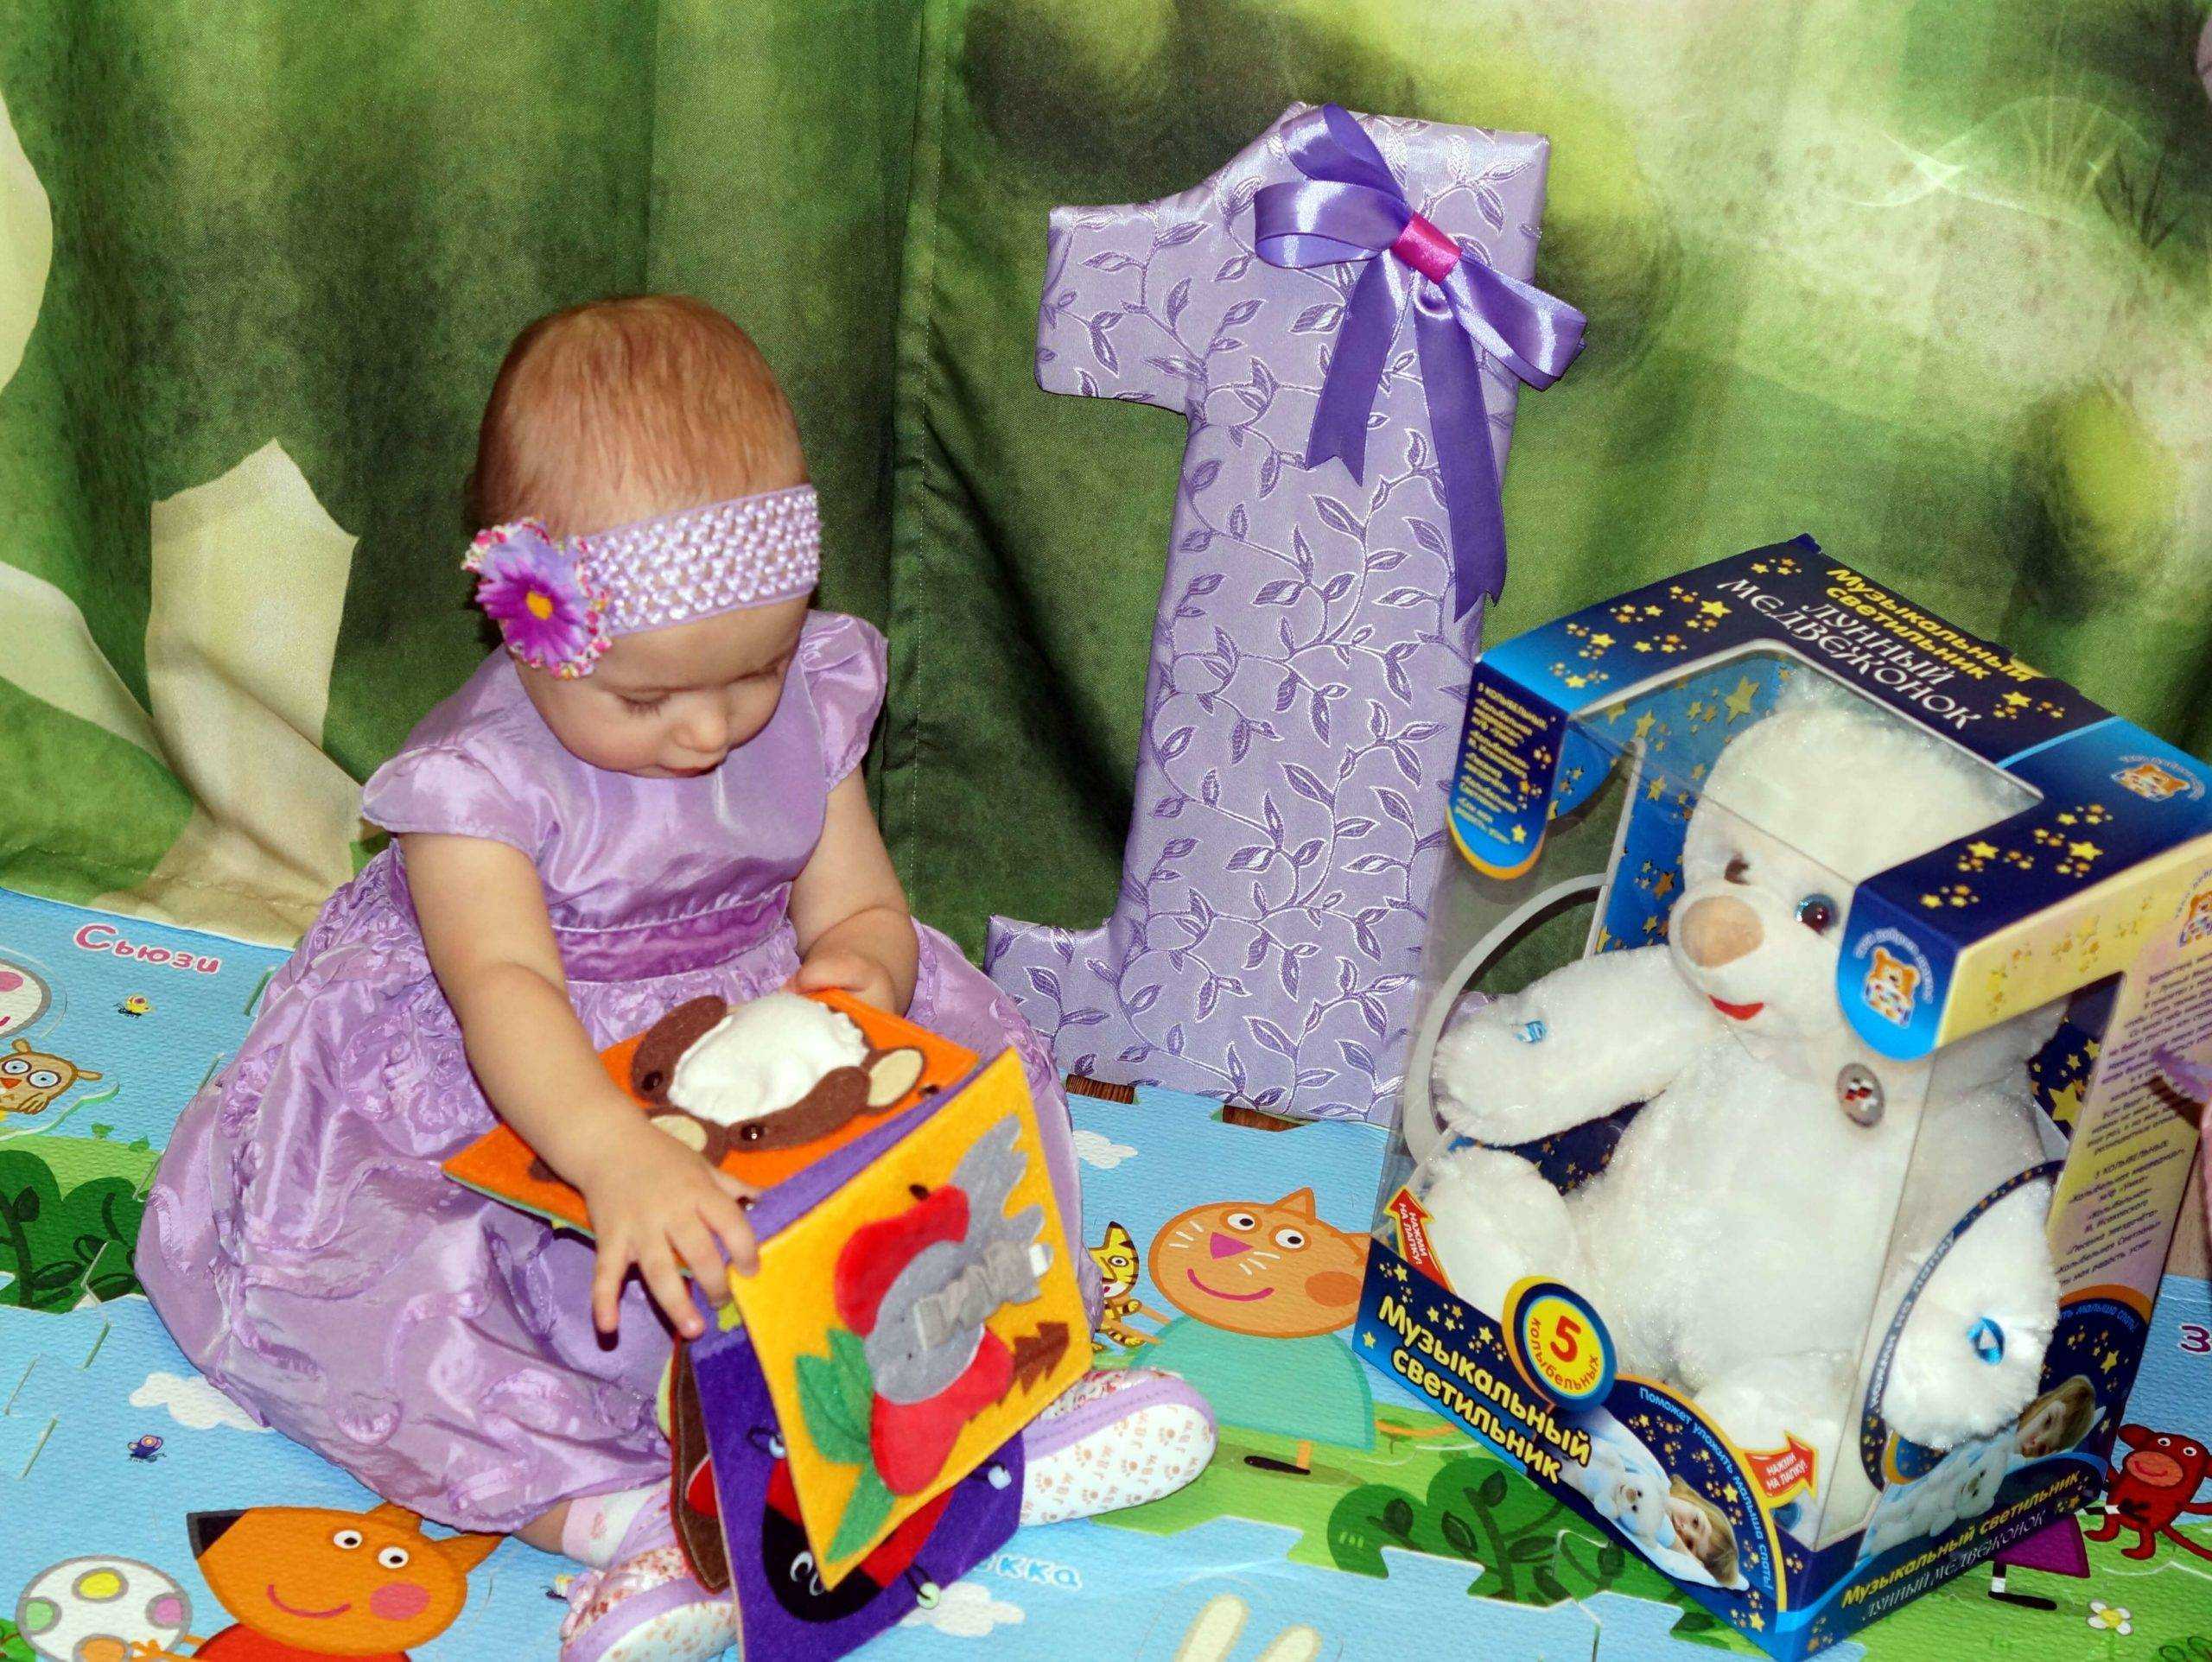 Подарок на 4 года для девочки: что выбрать и как преподнести Какие игрушки будут полезны в этом возрасте Стоит ли дарить наряды и аксессуары Насколько актуальны книги